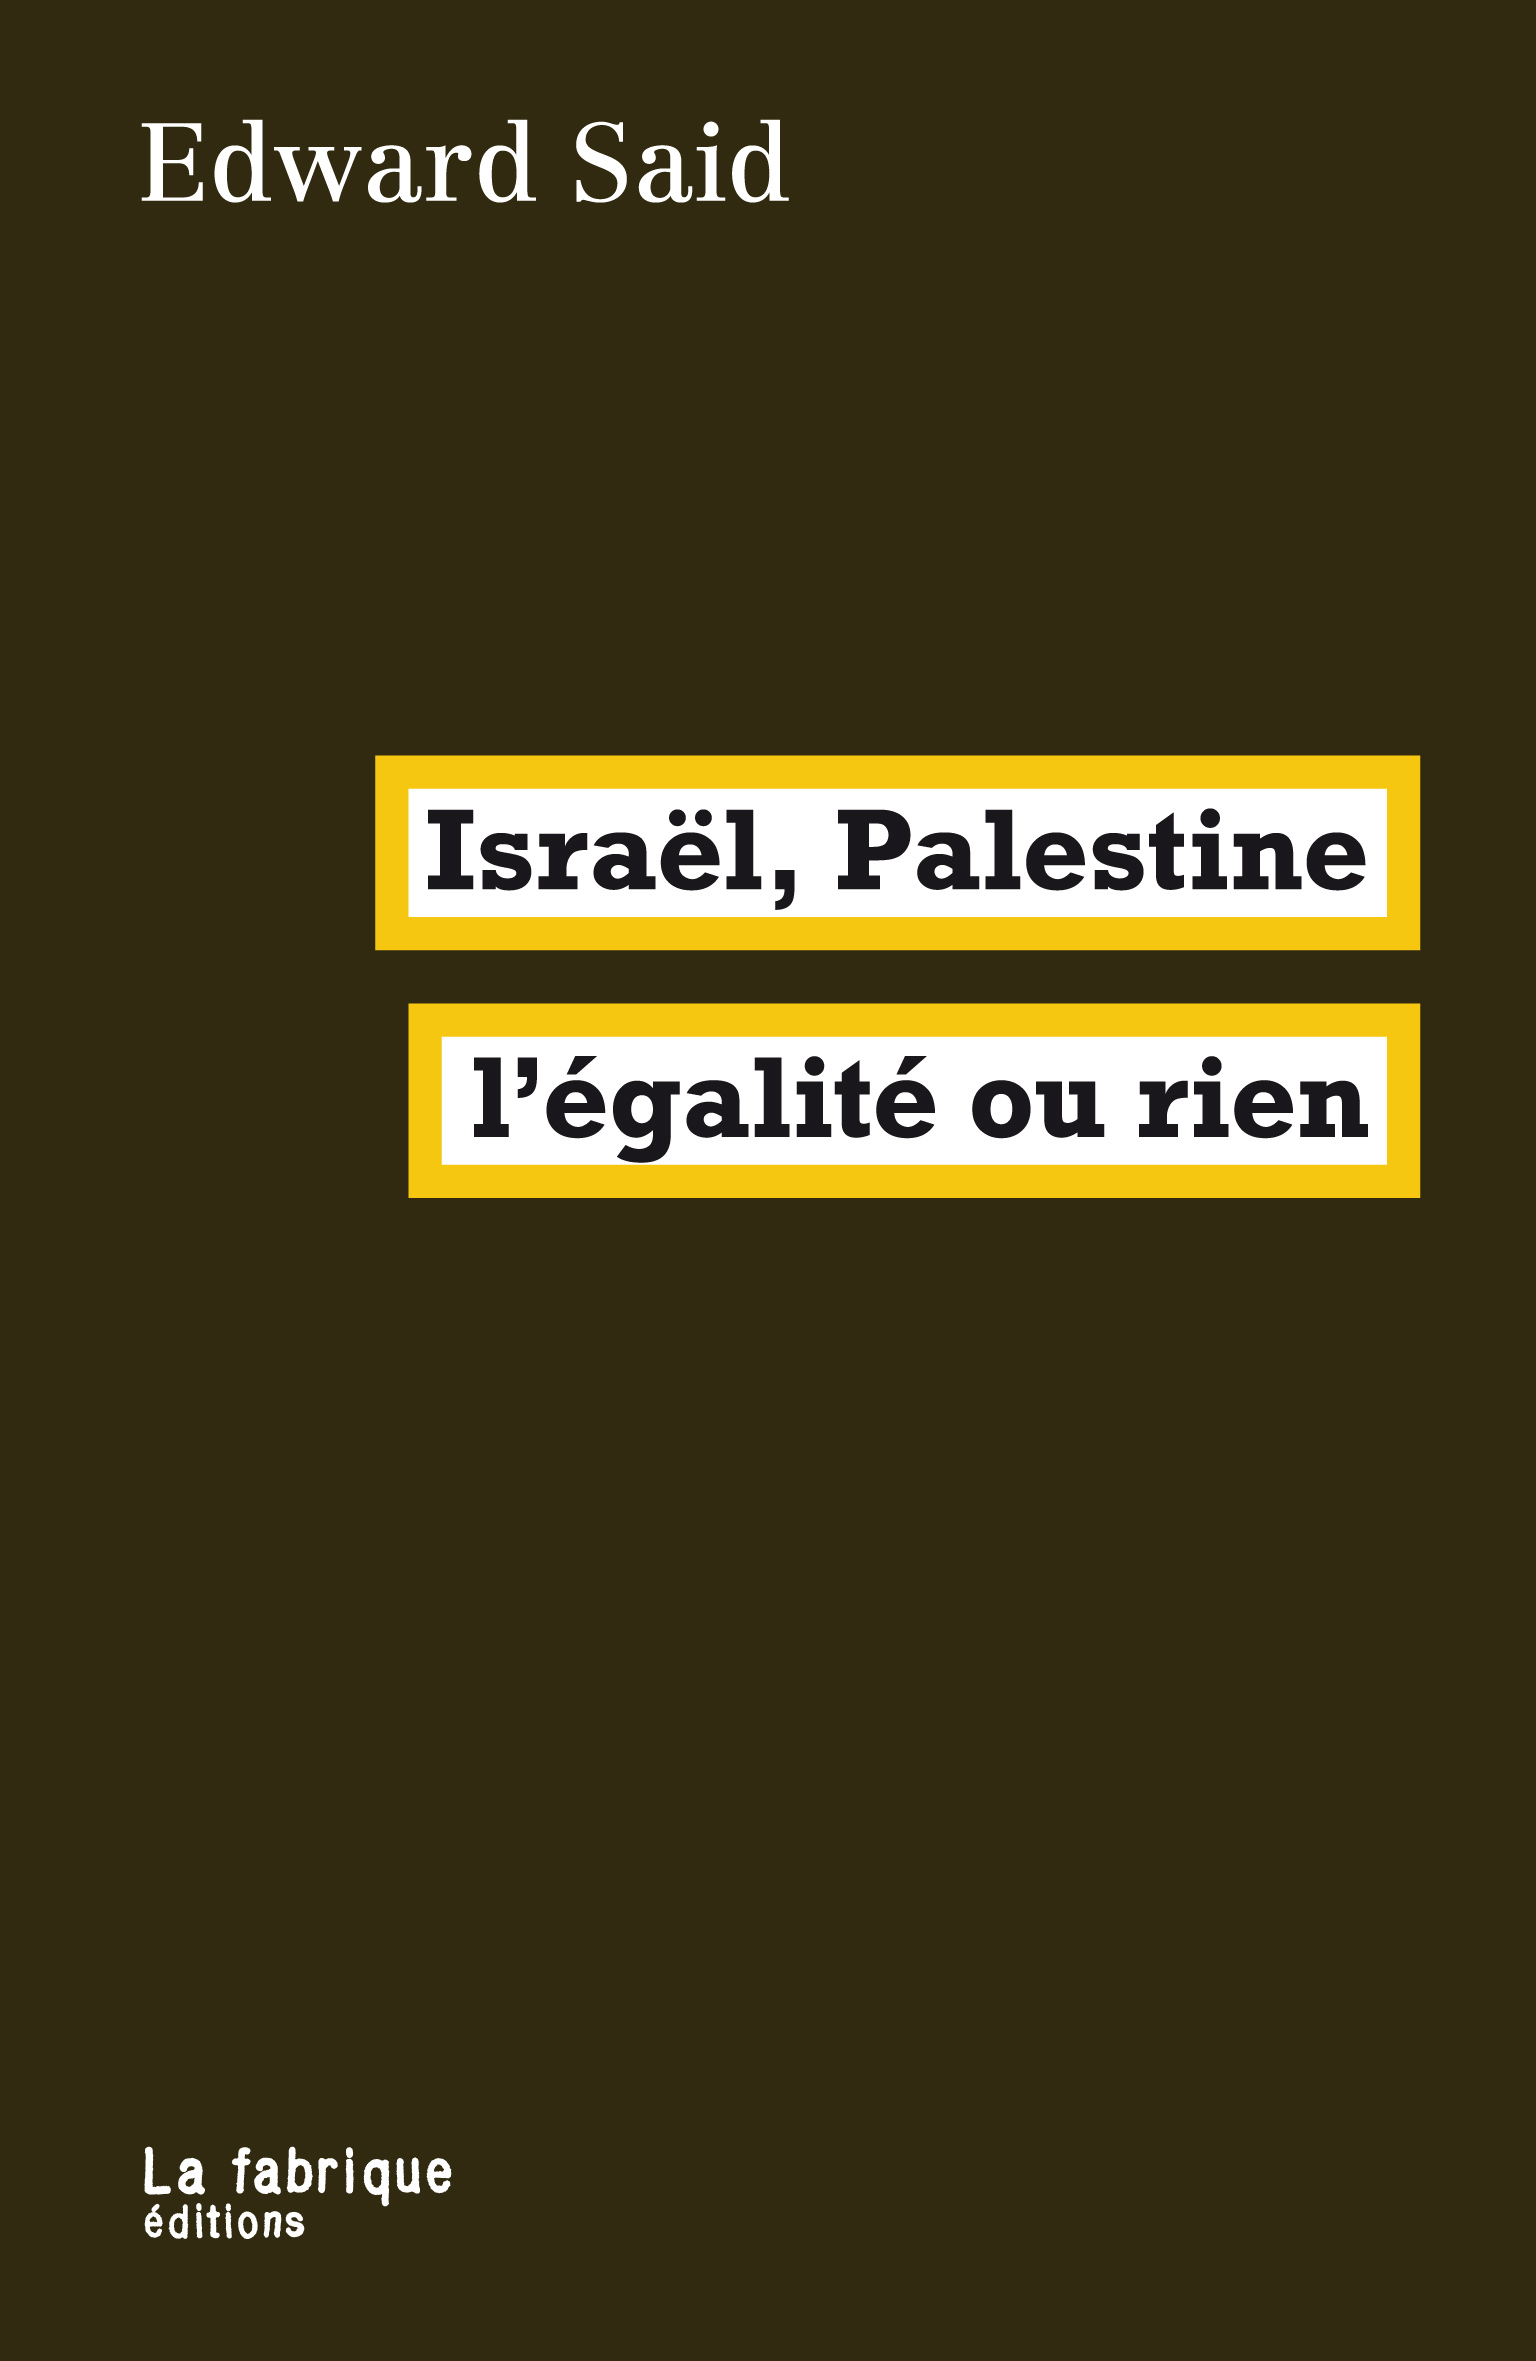 https://lafabrique.fr/wp-content/uploads/2017/10/Israe%CC%88l-Palestine_couv.jpg